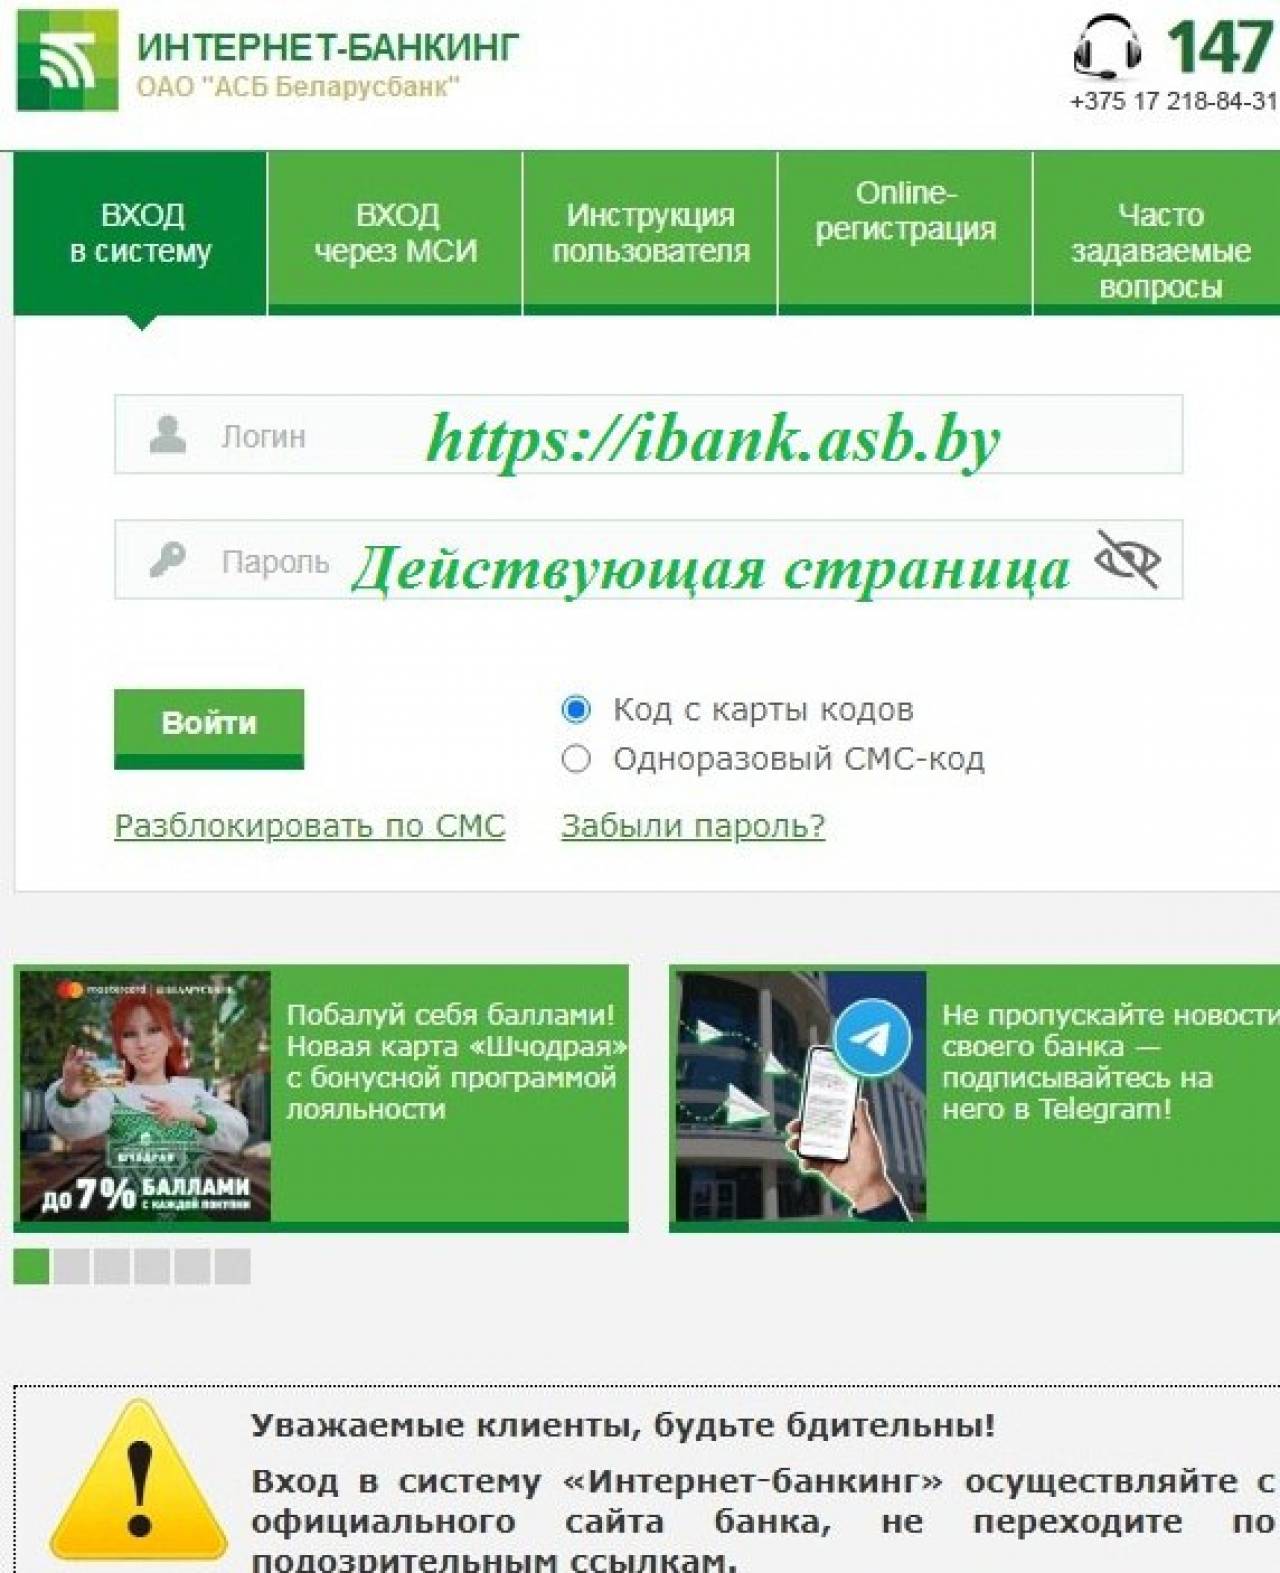 Жительница Волковыска через интернет оплачивала услуги ЖКХ, но «залогинилась» на сайте мошенников — потеряла все деньги